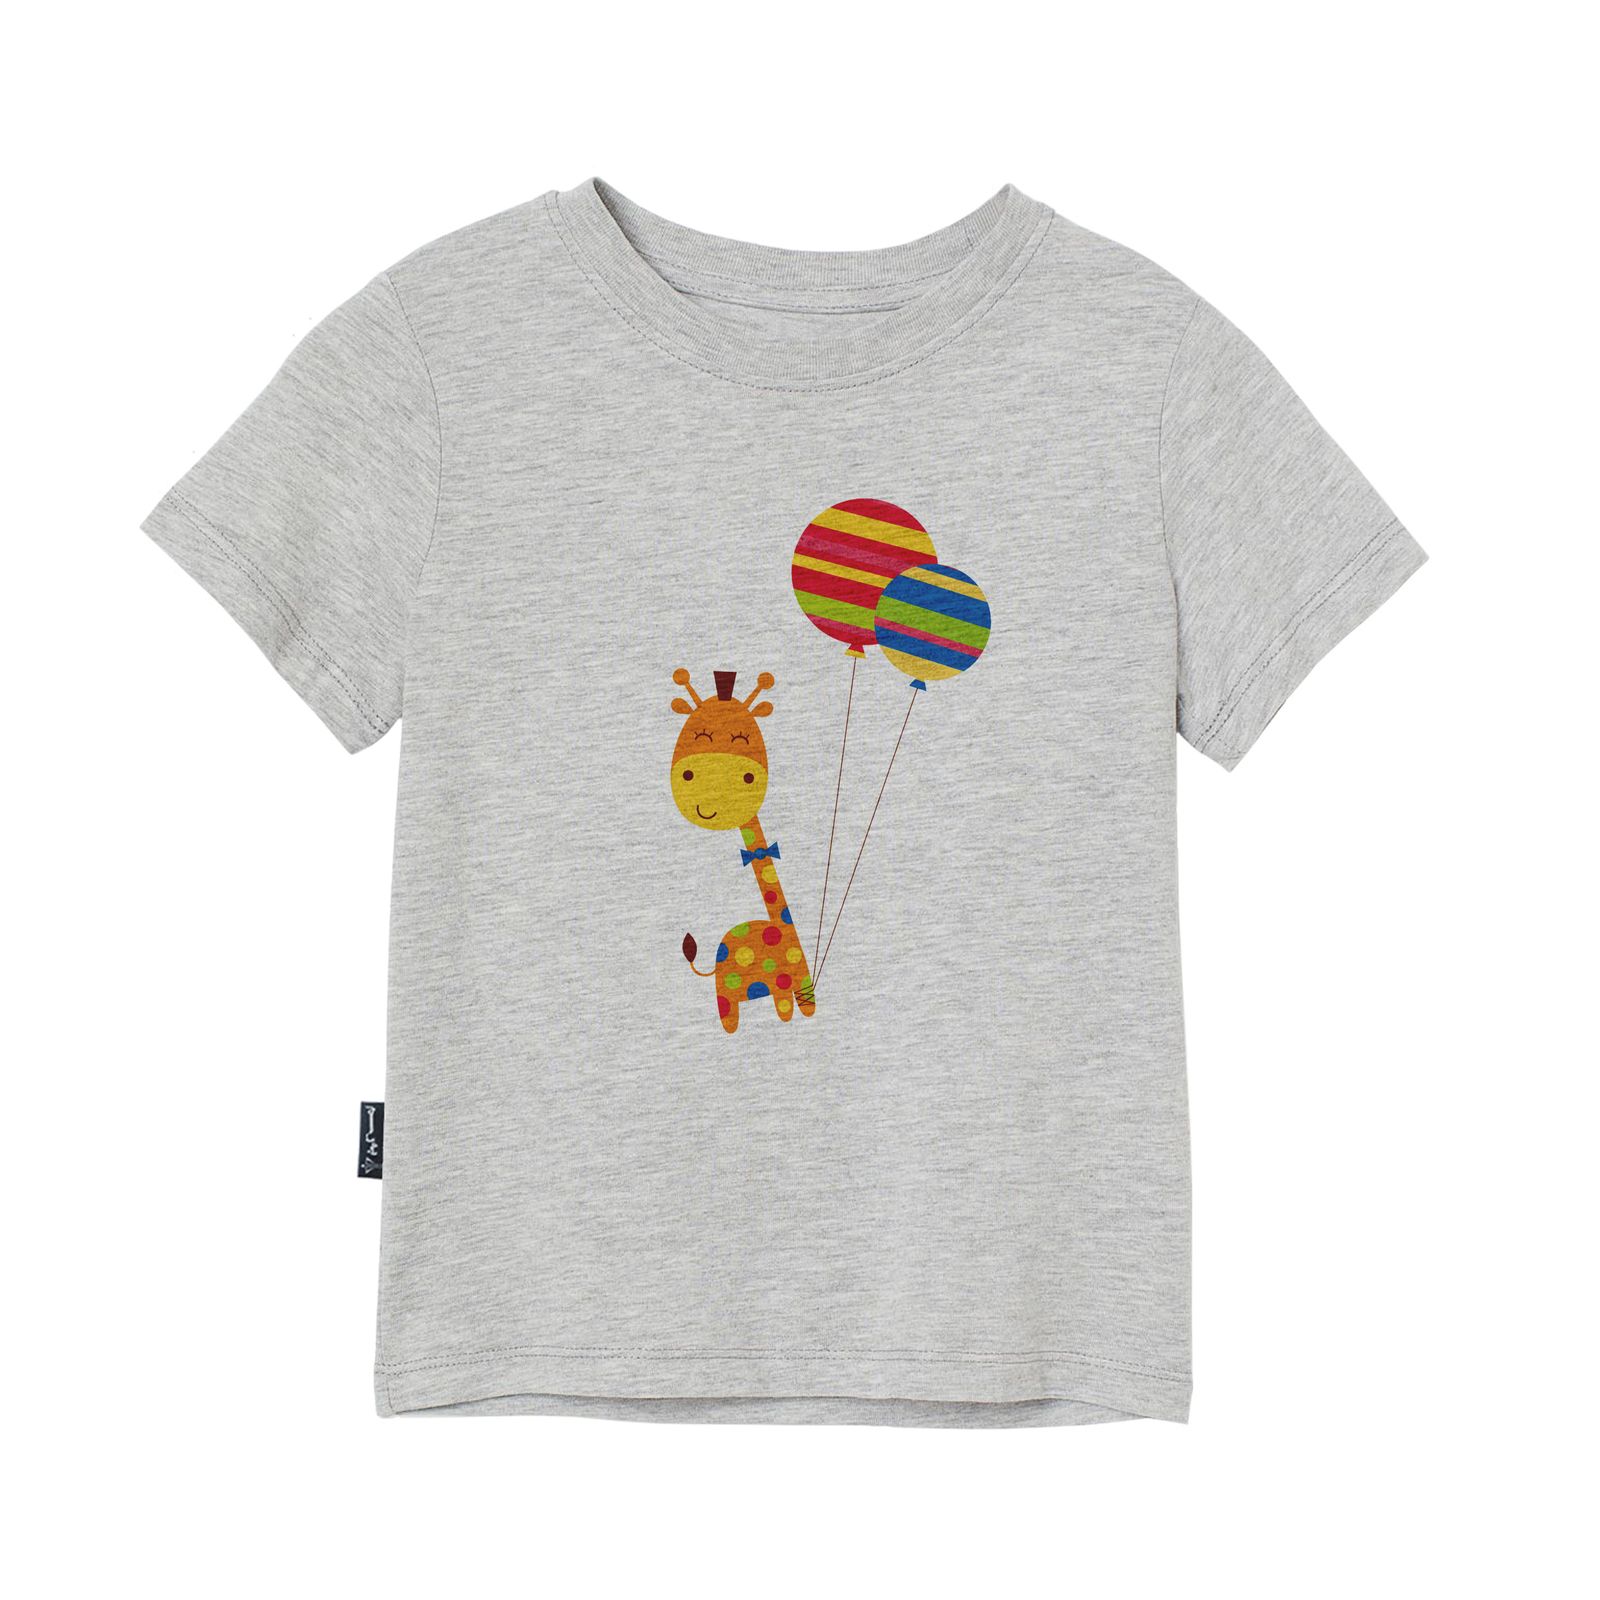 تی شرت آستین کوتاه پسرانه به رسم مدل زرافه و بادکنک کد 1114 -  - 1